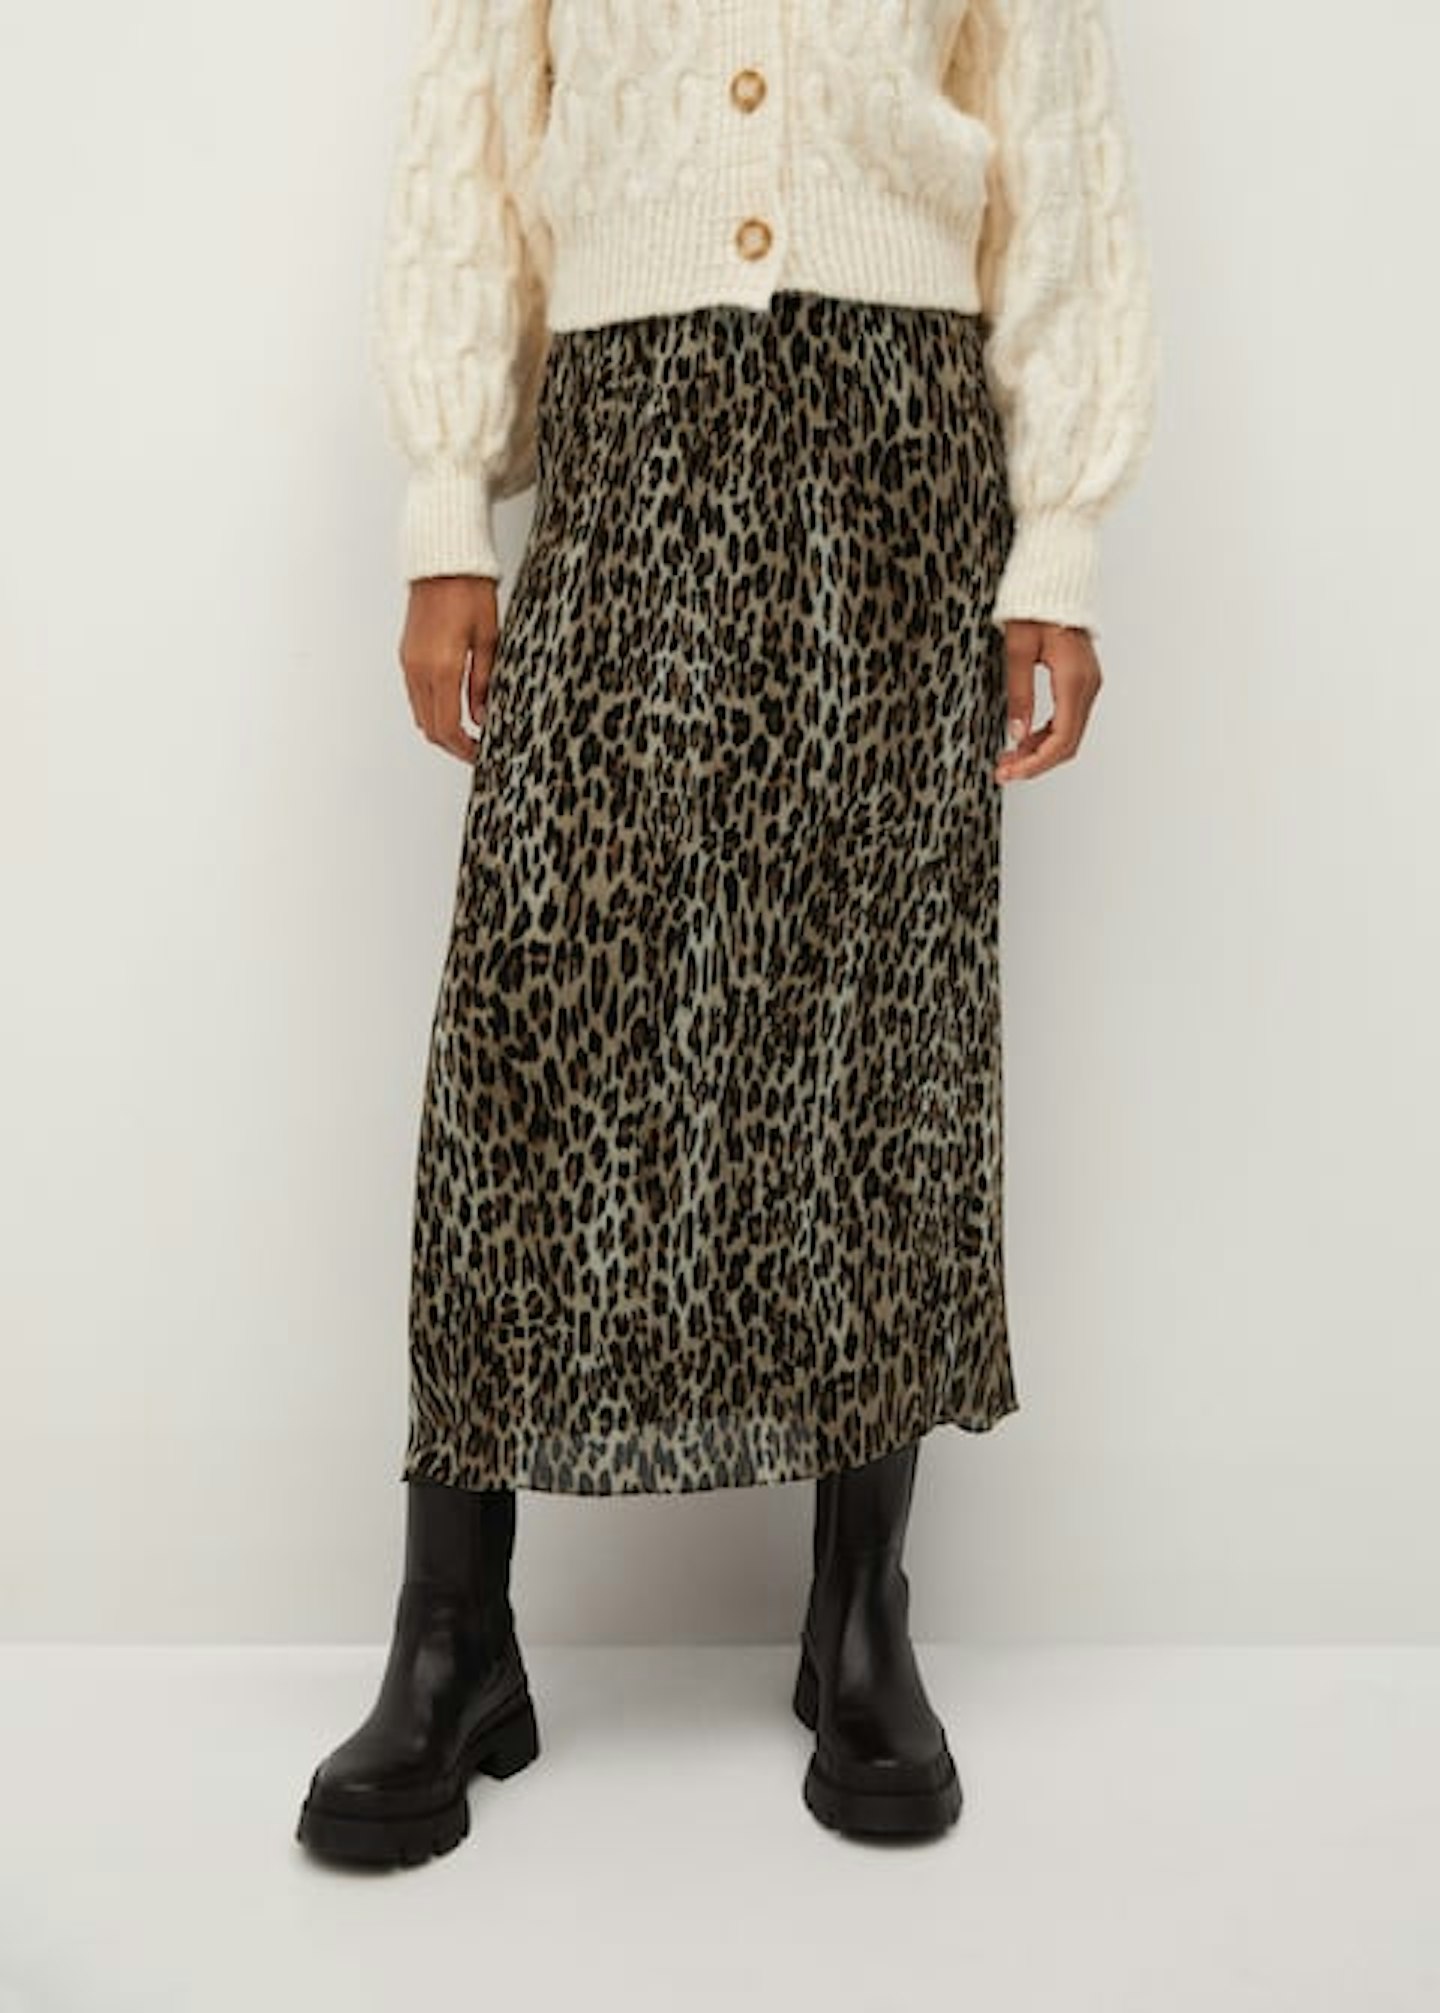 Mango, Printed Pleated Skirt, £49.99